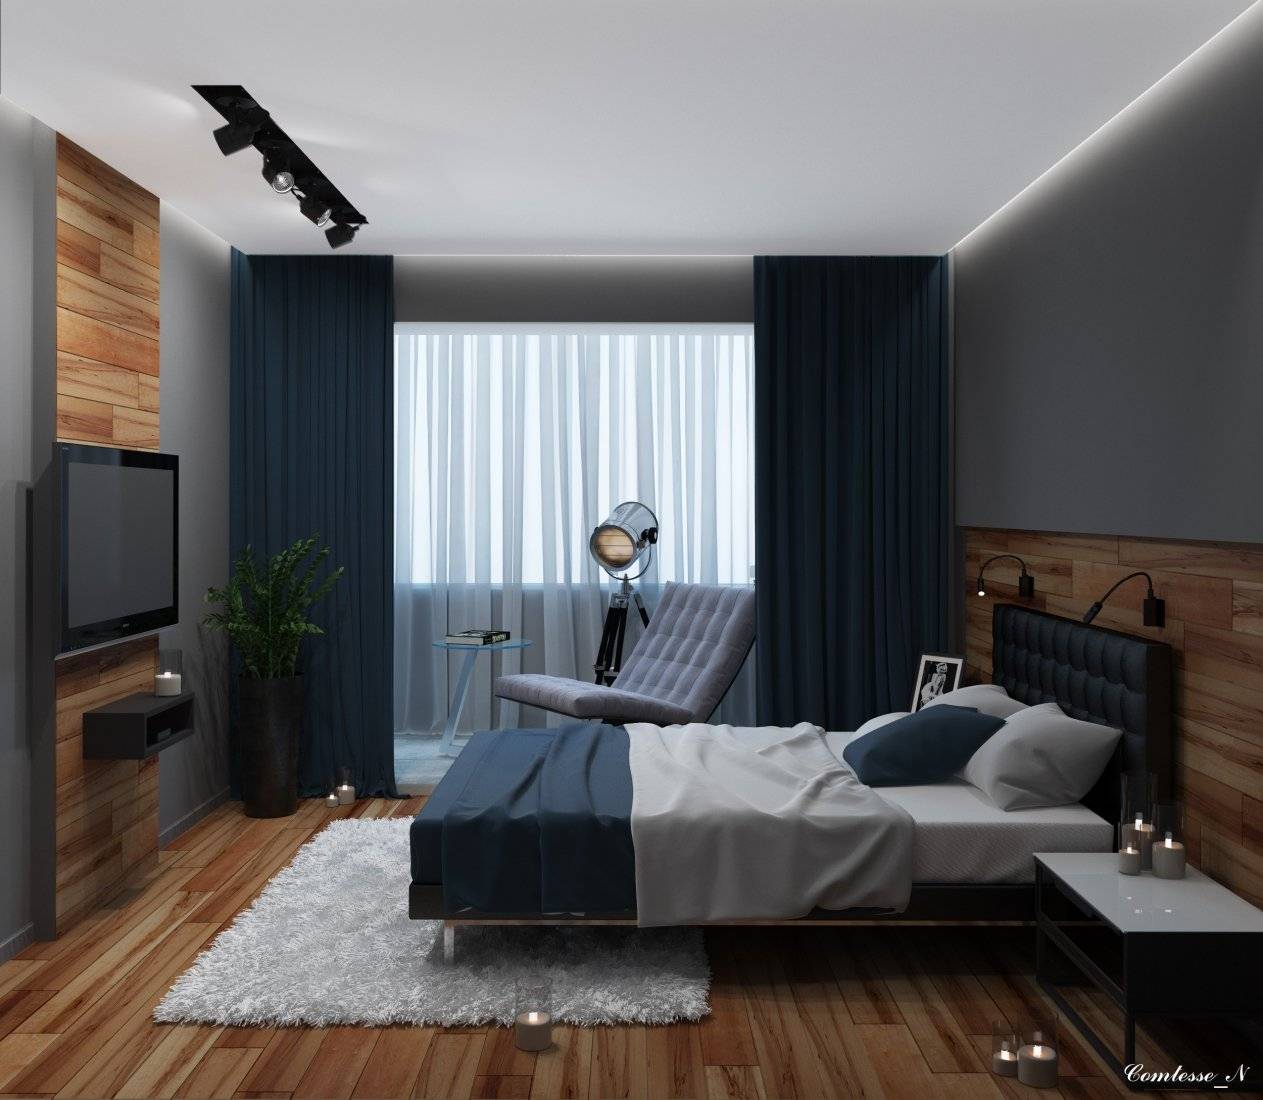 Мужская спальня - фото необычных дизайнерских решений и секретов